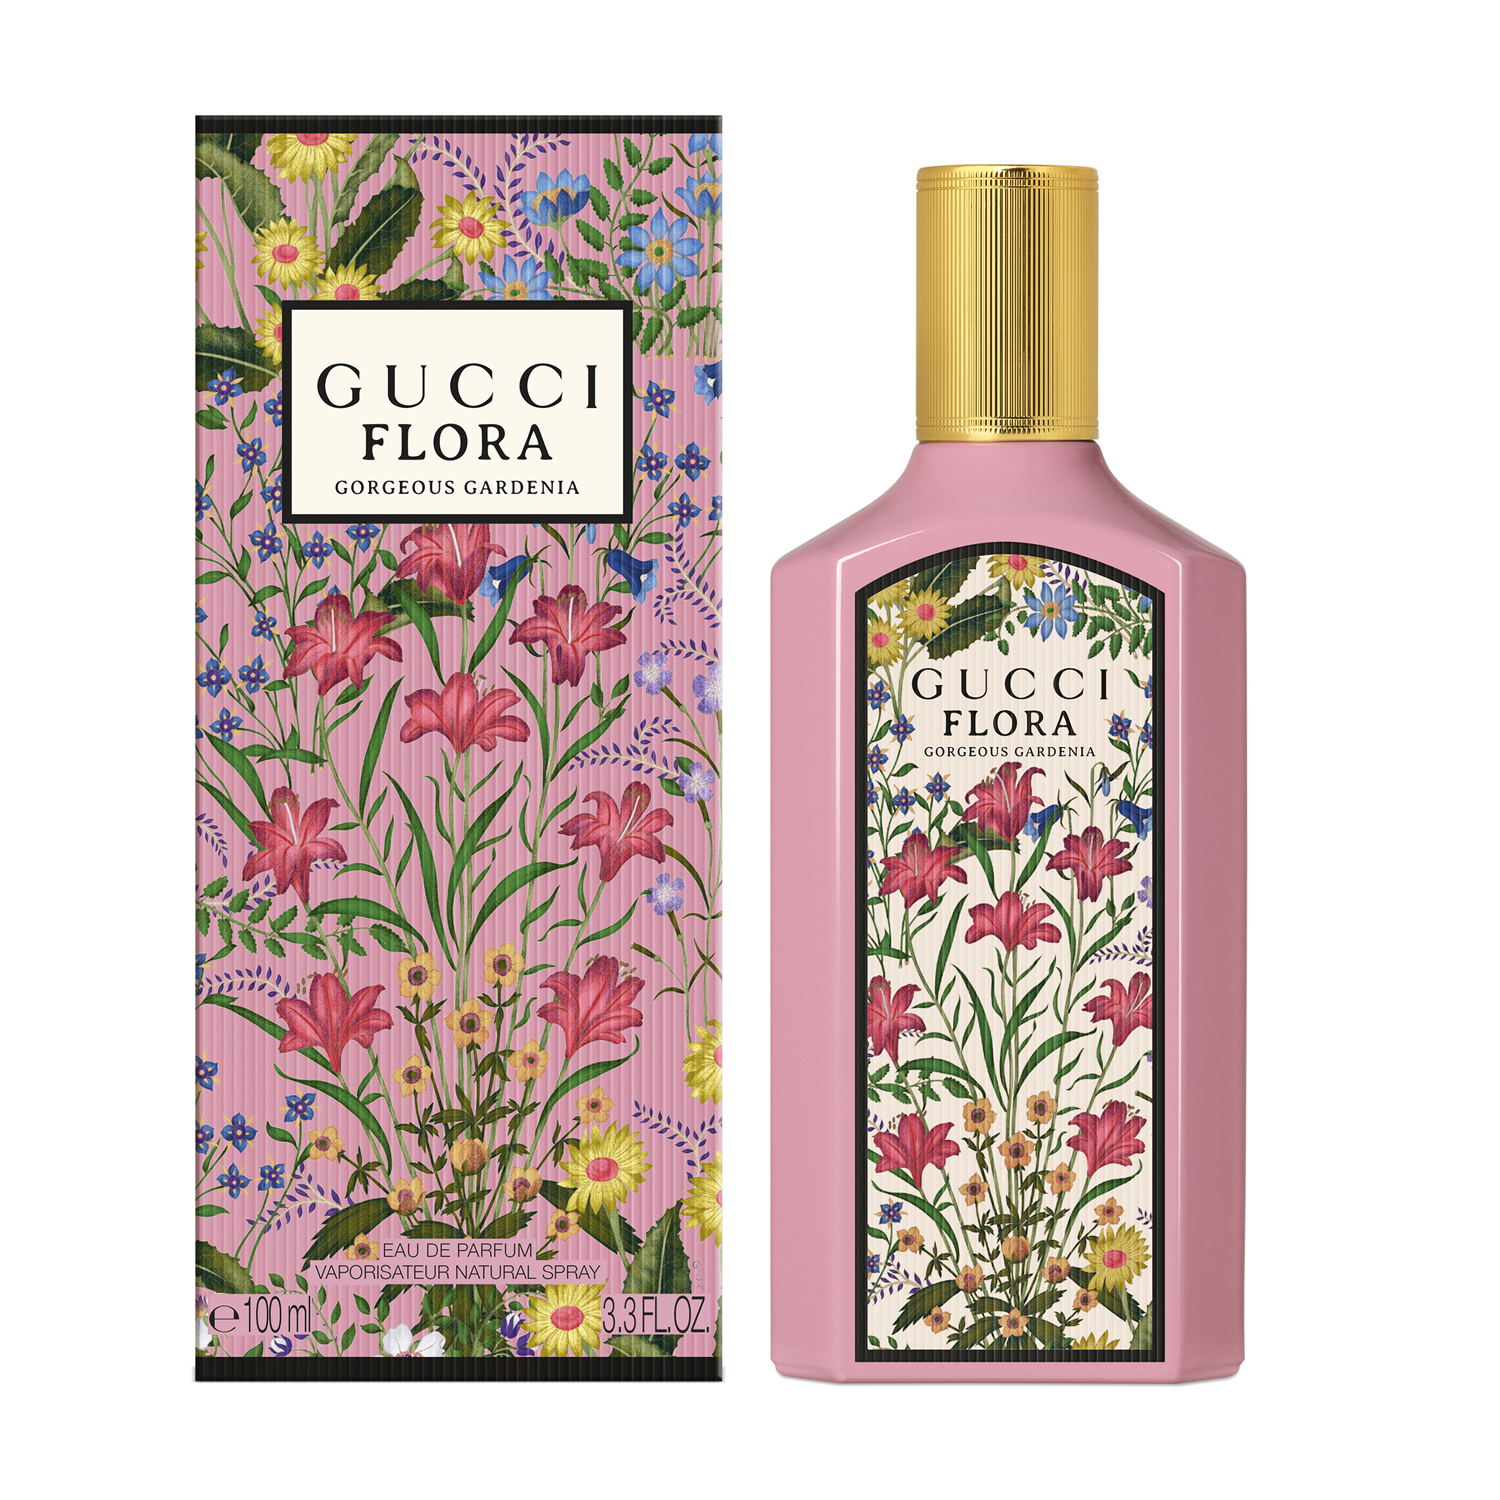 Gucci Flora Gorgeous Gardenia EDP 100ml